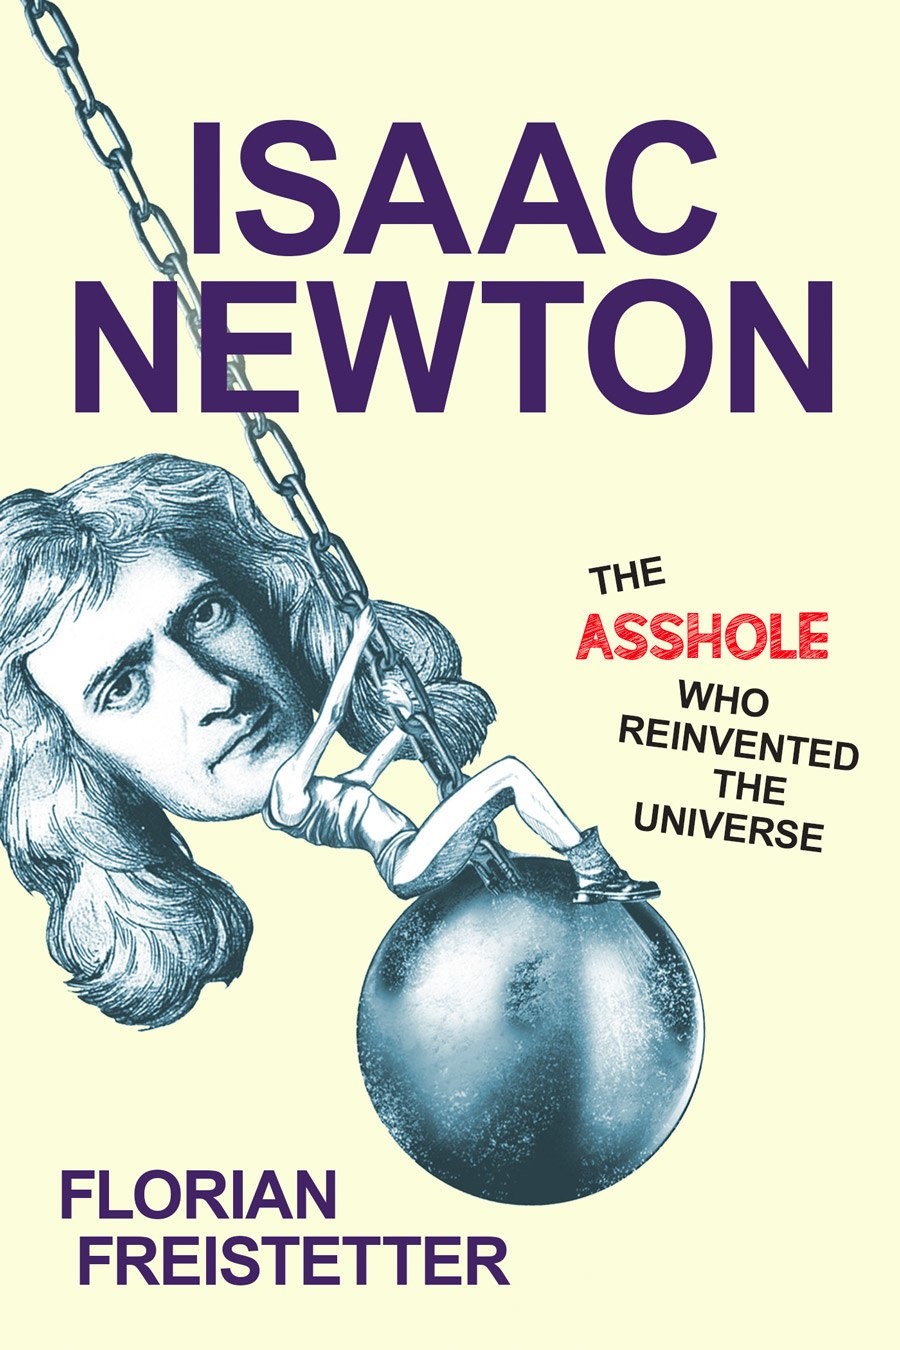 غلاف كتاب: «إسحق نيوتن، المجنون الذي أعاد اختراع الكون» من تأليف (فلوريان فريستيتر).